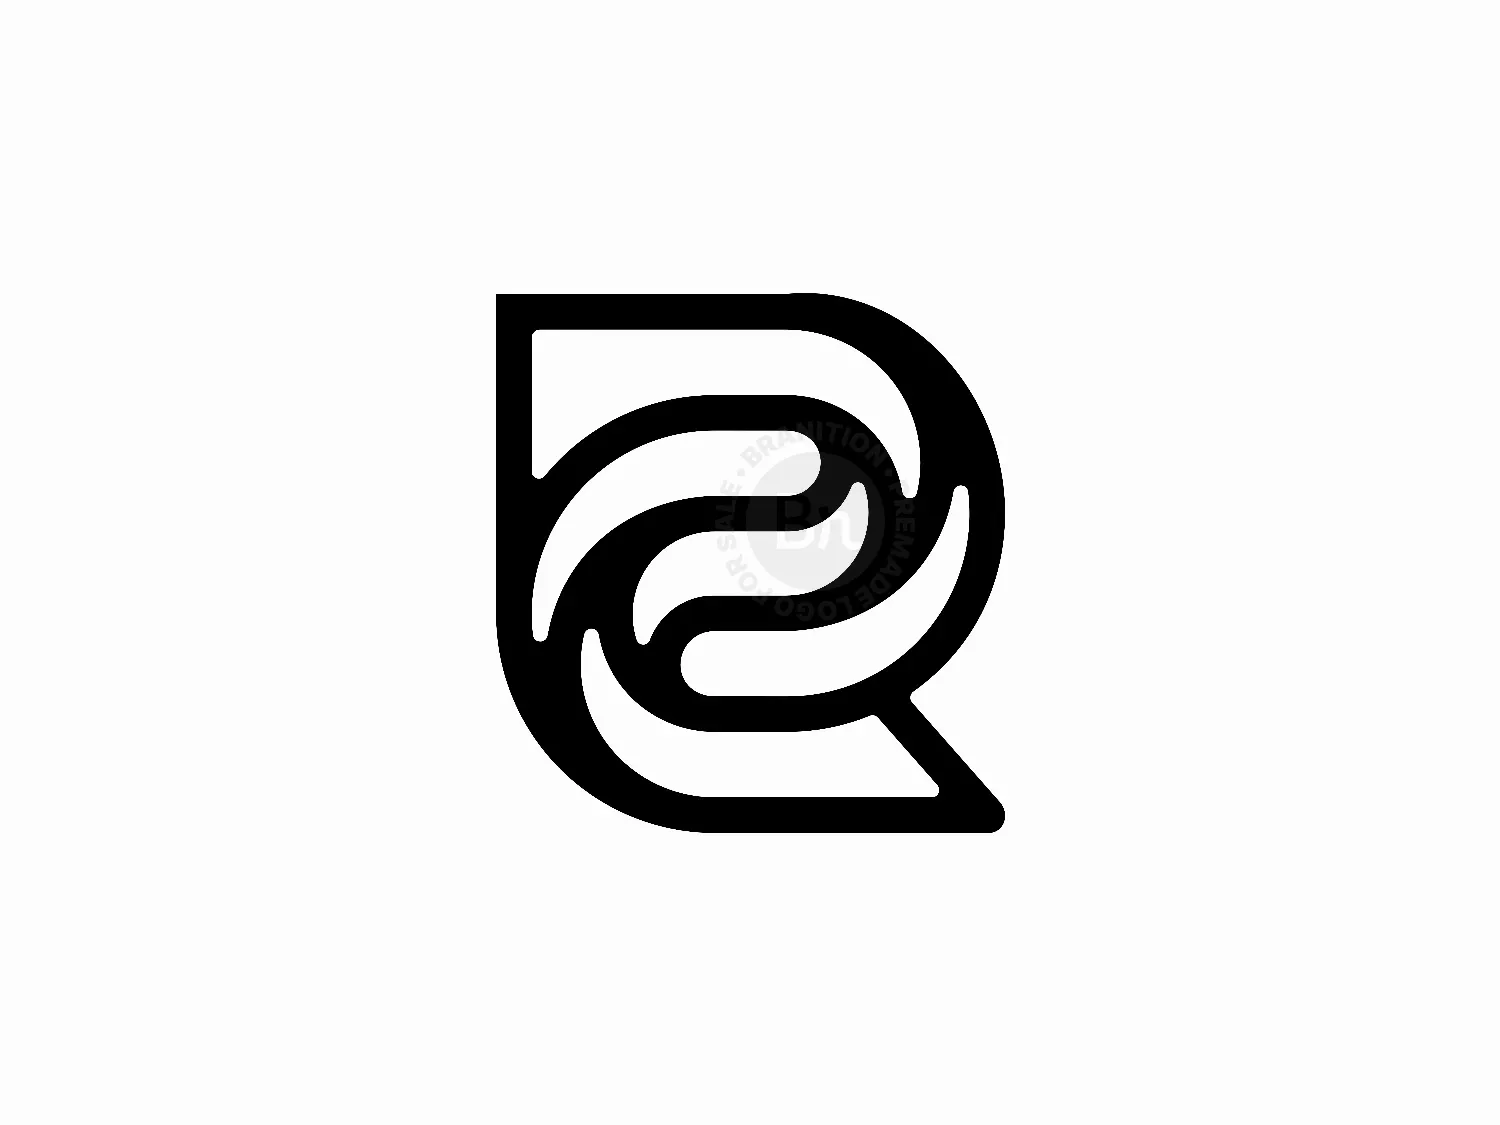 Letter R Dynamic Logo